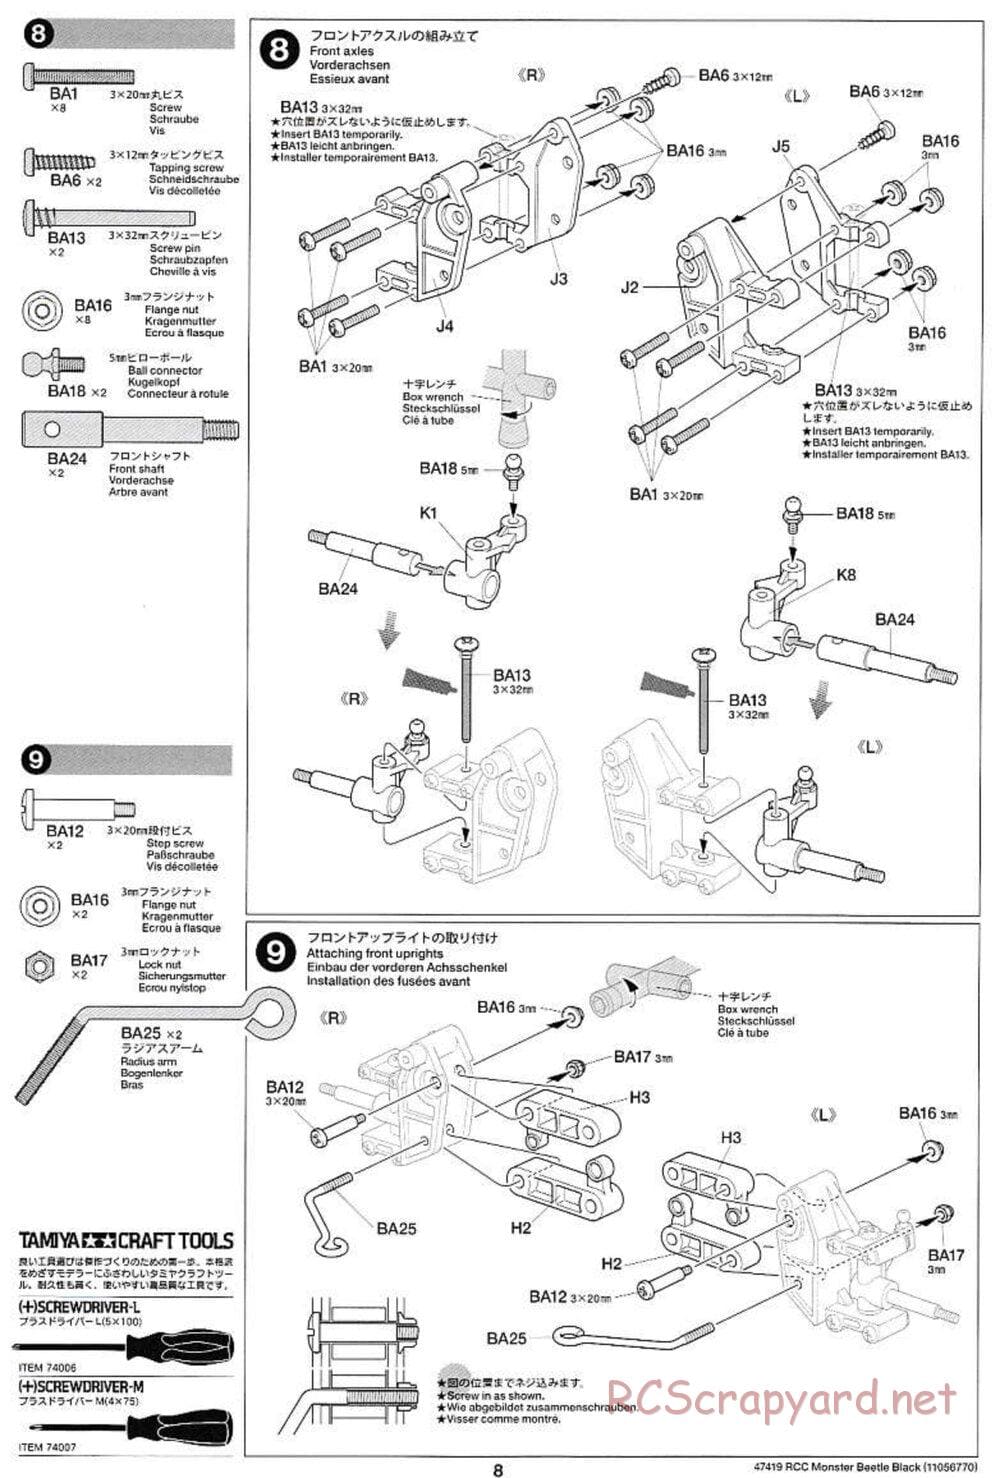 Tamiya - Monster Beetle Black Edition - ORV Chassis - Manual - Page 8